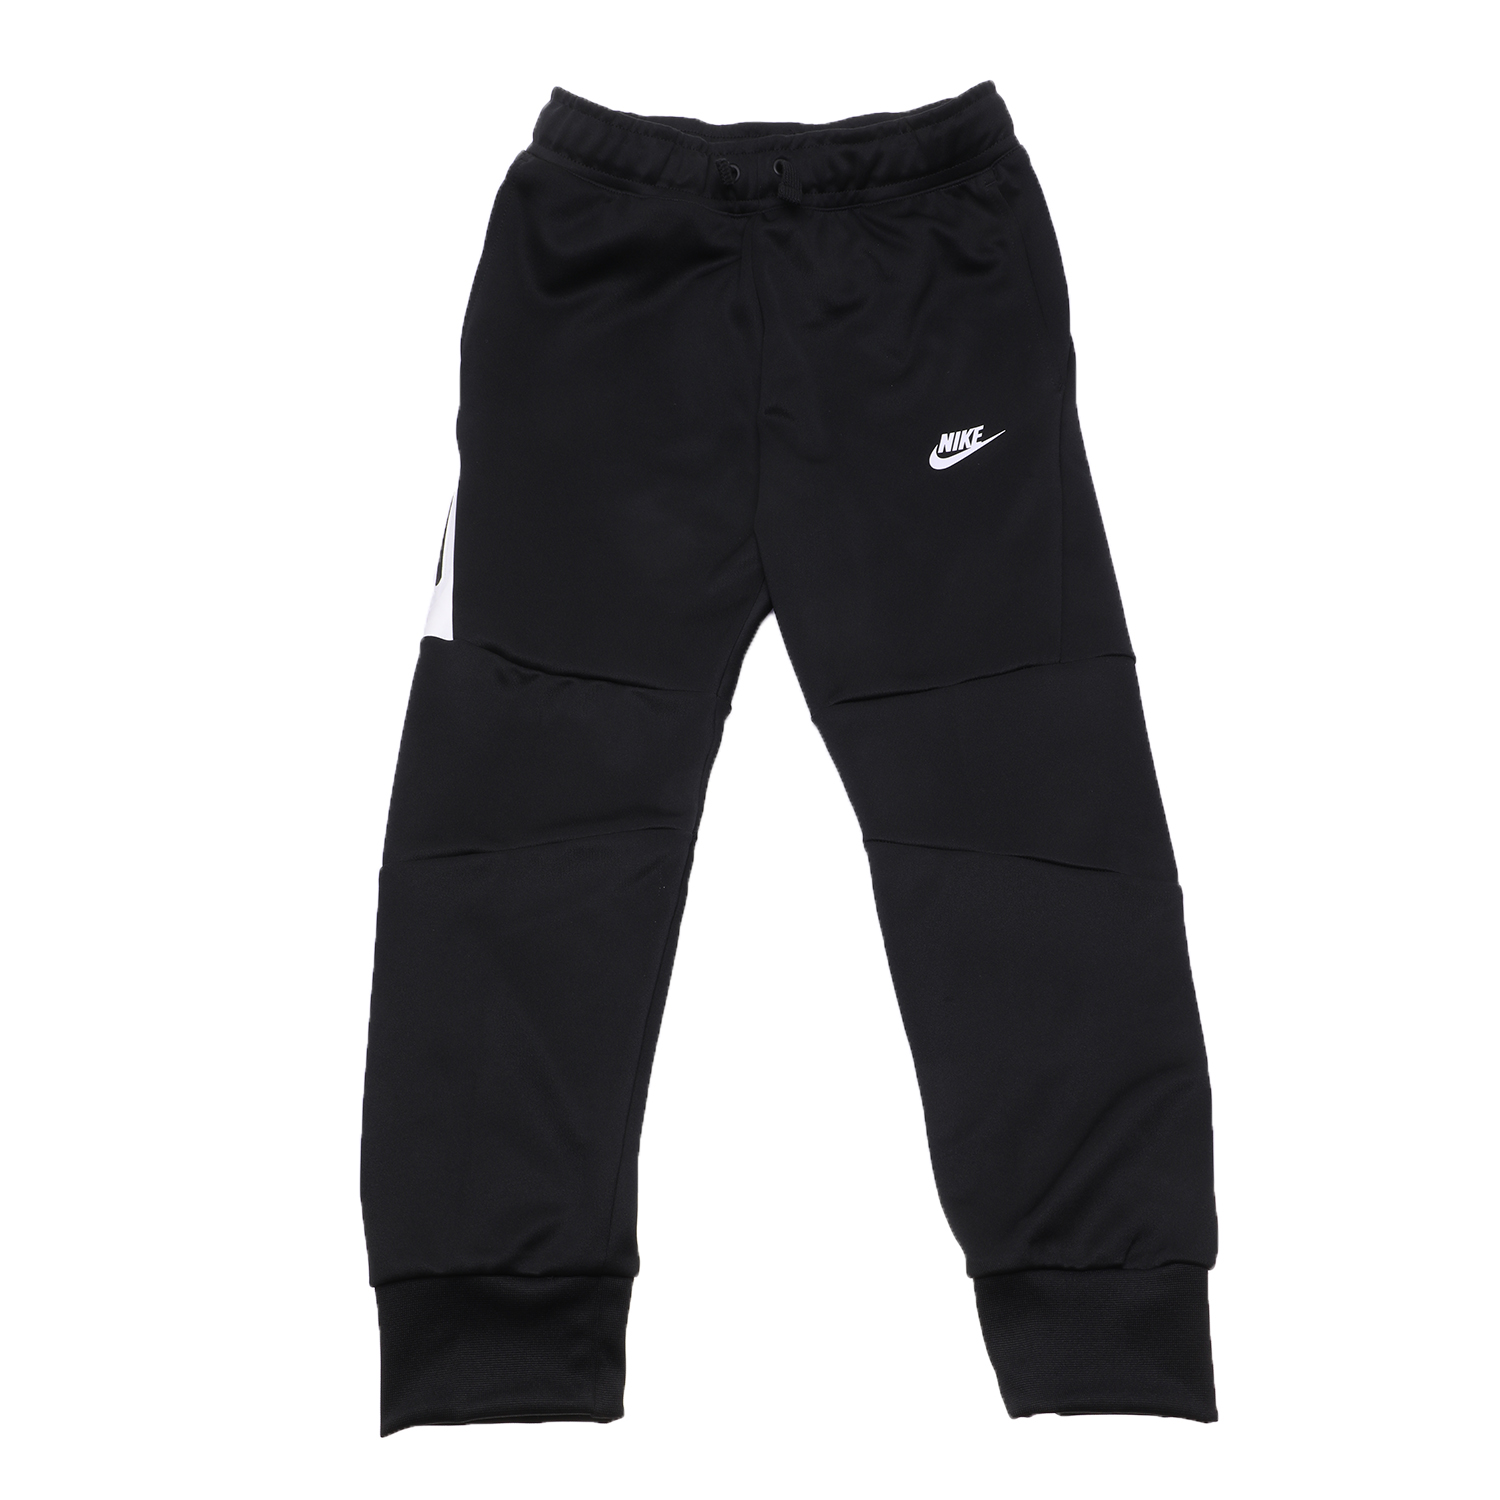 Παιδικά/Boys/Ρούχα/Αθλητικά NIKE - Παιδικό παντελόνι φόρμας NIKE NSW TCH SSNL μαύρο